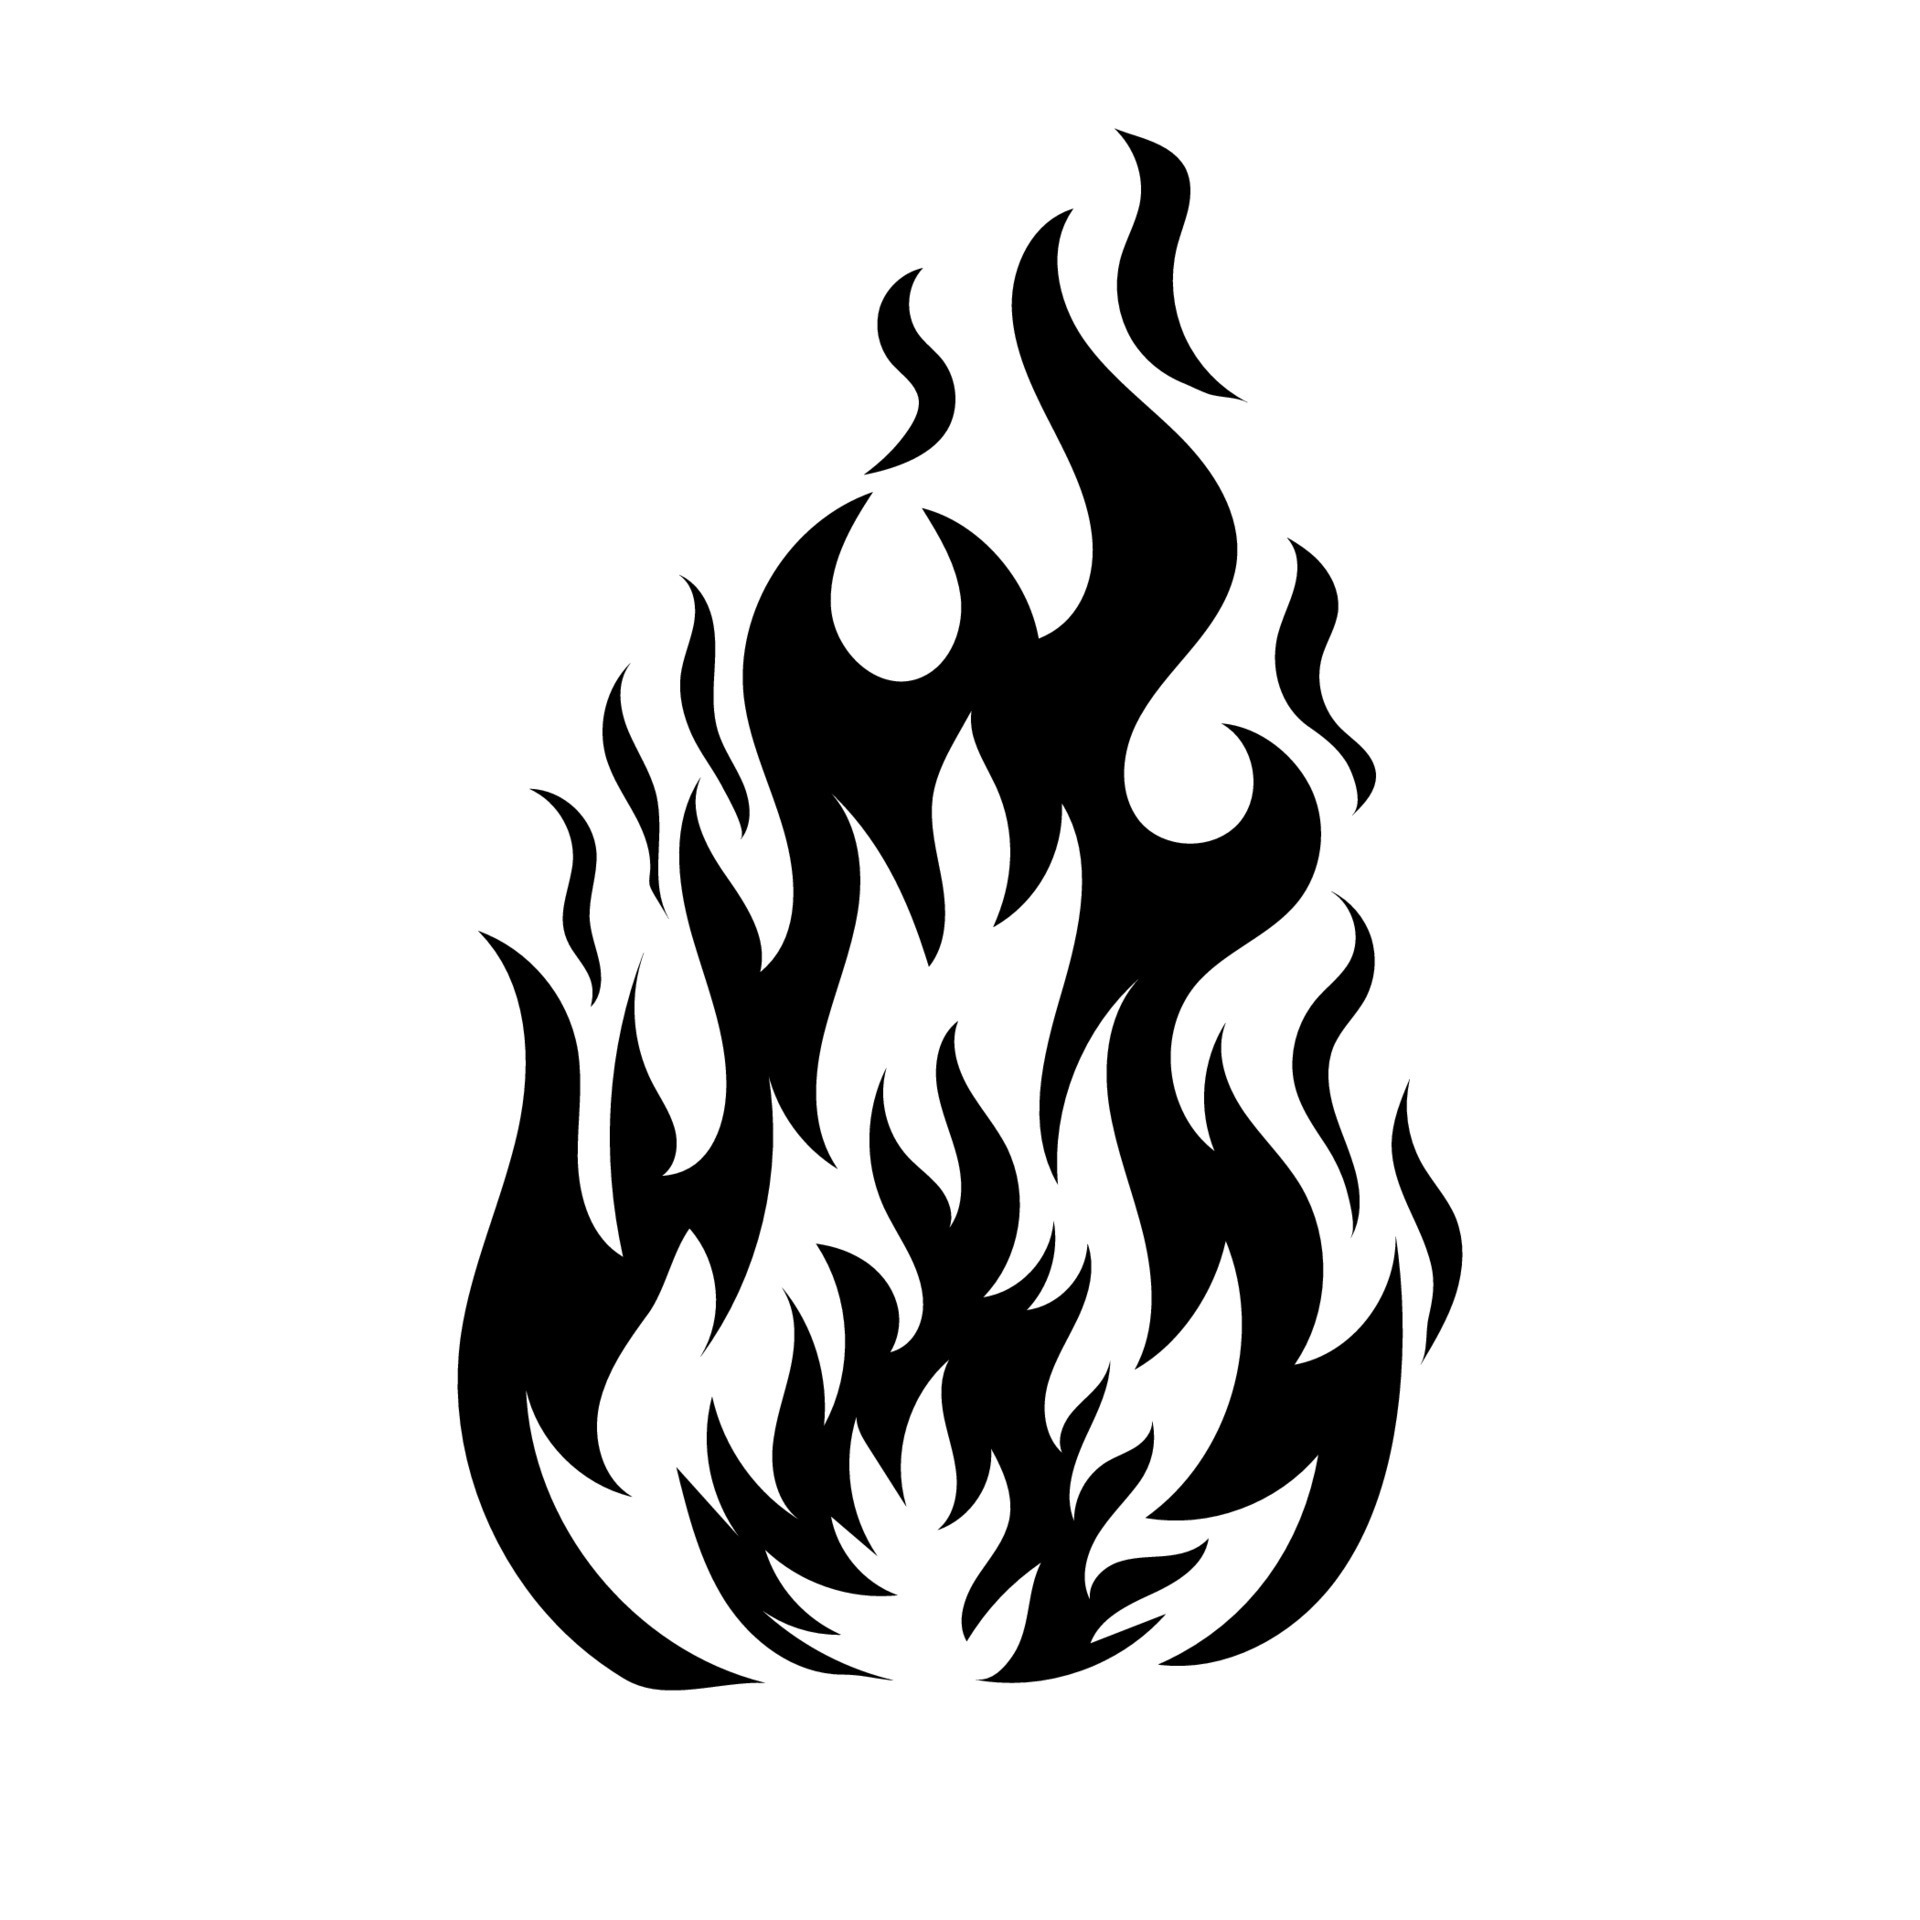 vetor de ícone de líquido de fogo. ilustração de símbolo de contorno  isolado 9967409 Vetor no Vecteezy